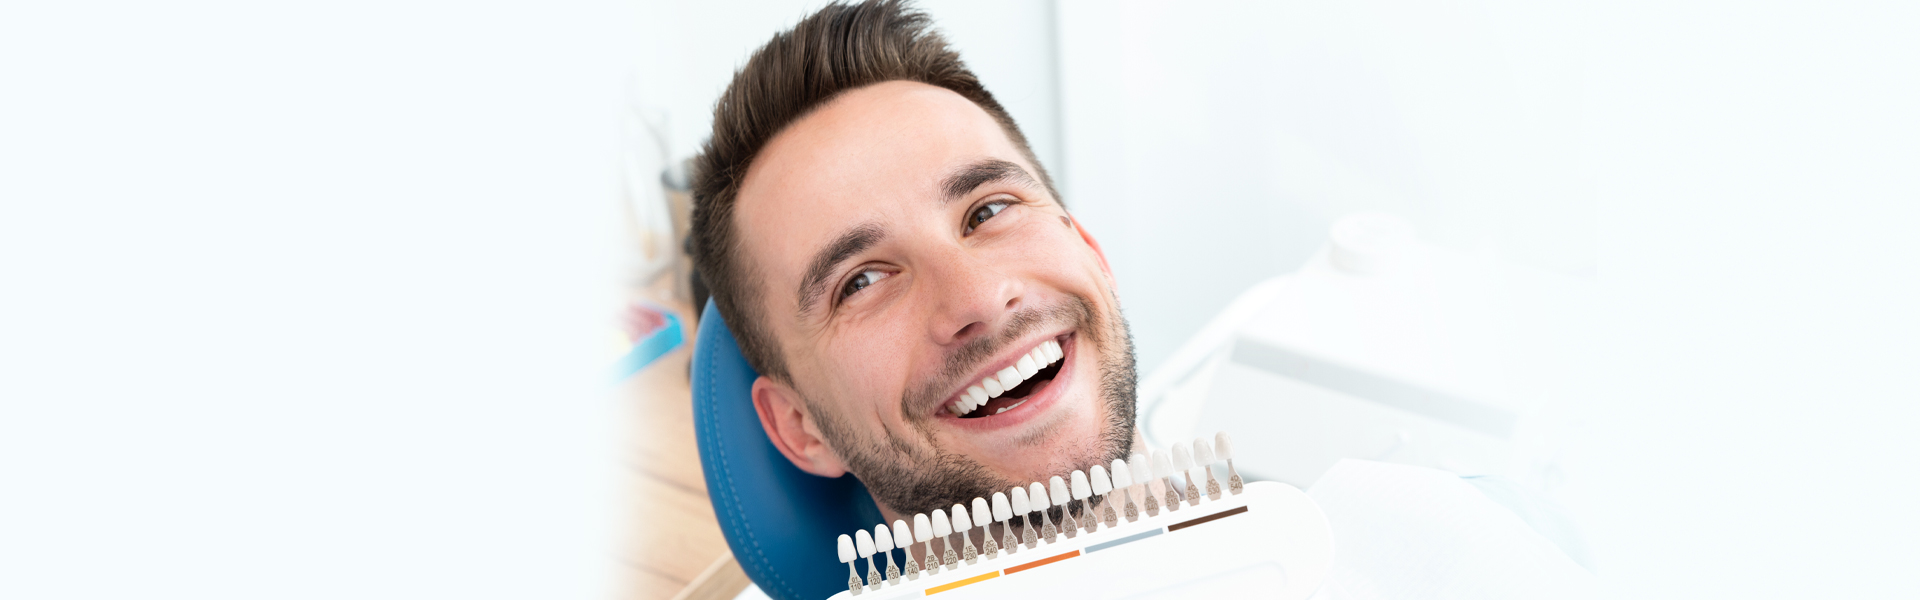 What are Dental Veneers? – Types of Veneers